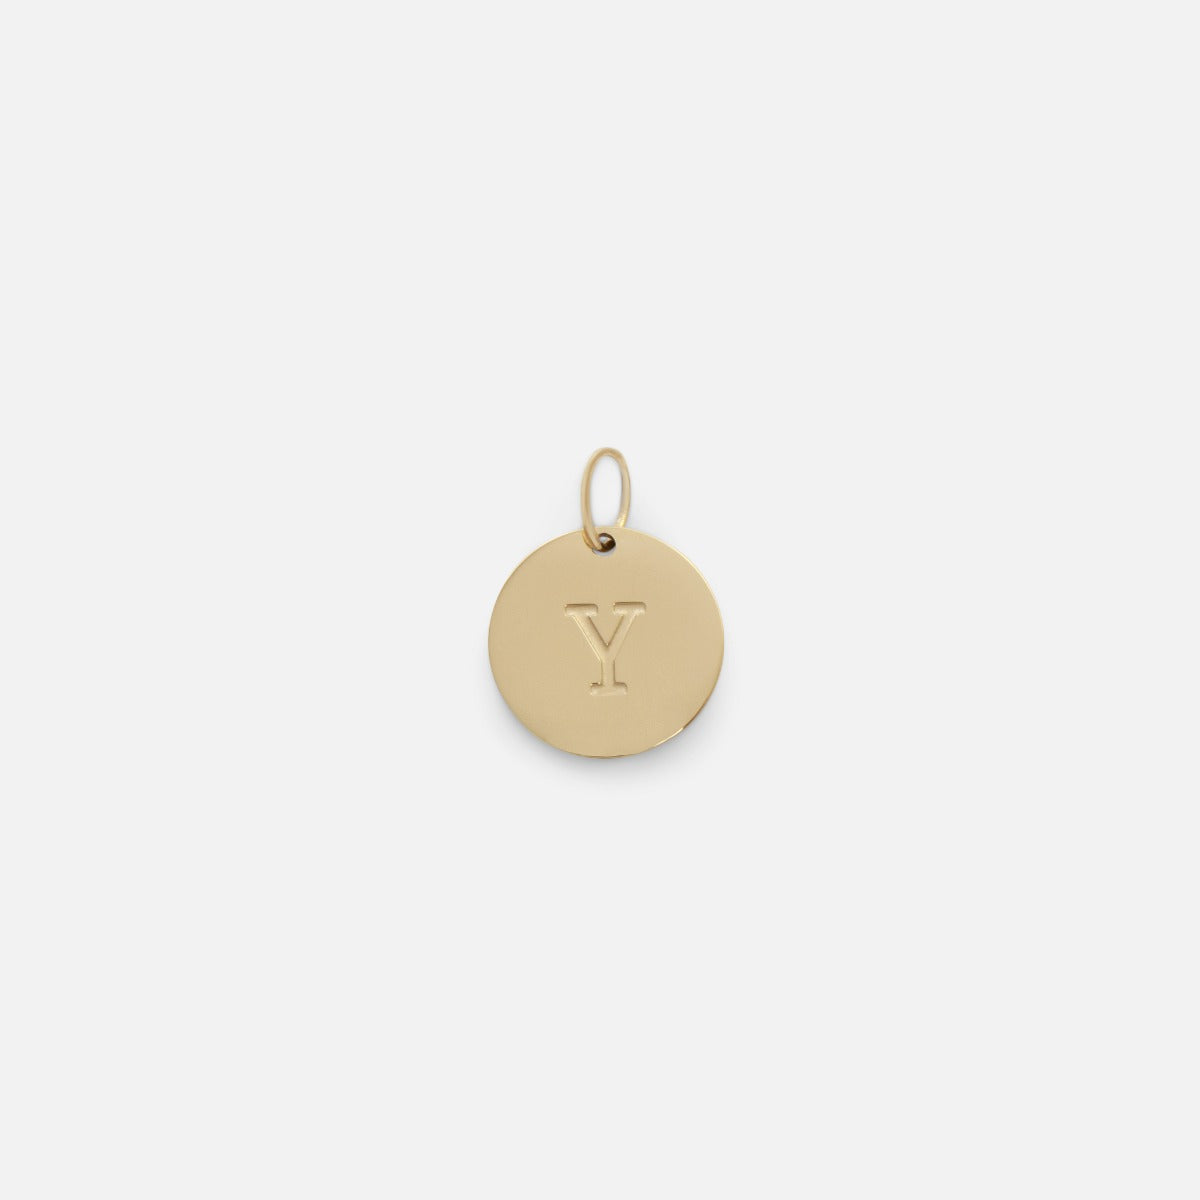 Petite breloque dorée symbolique gravée lettre de l’alphabet "y"